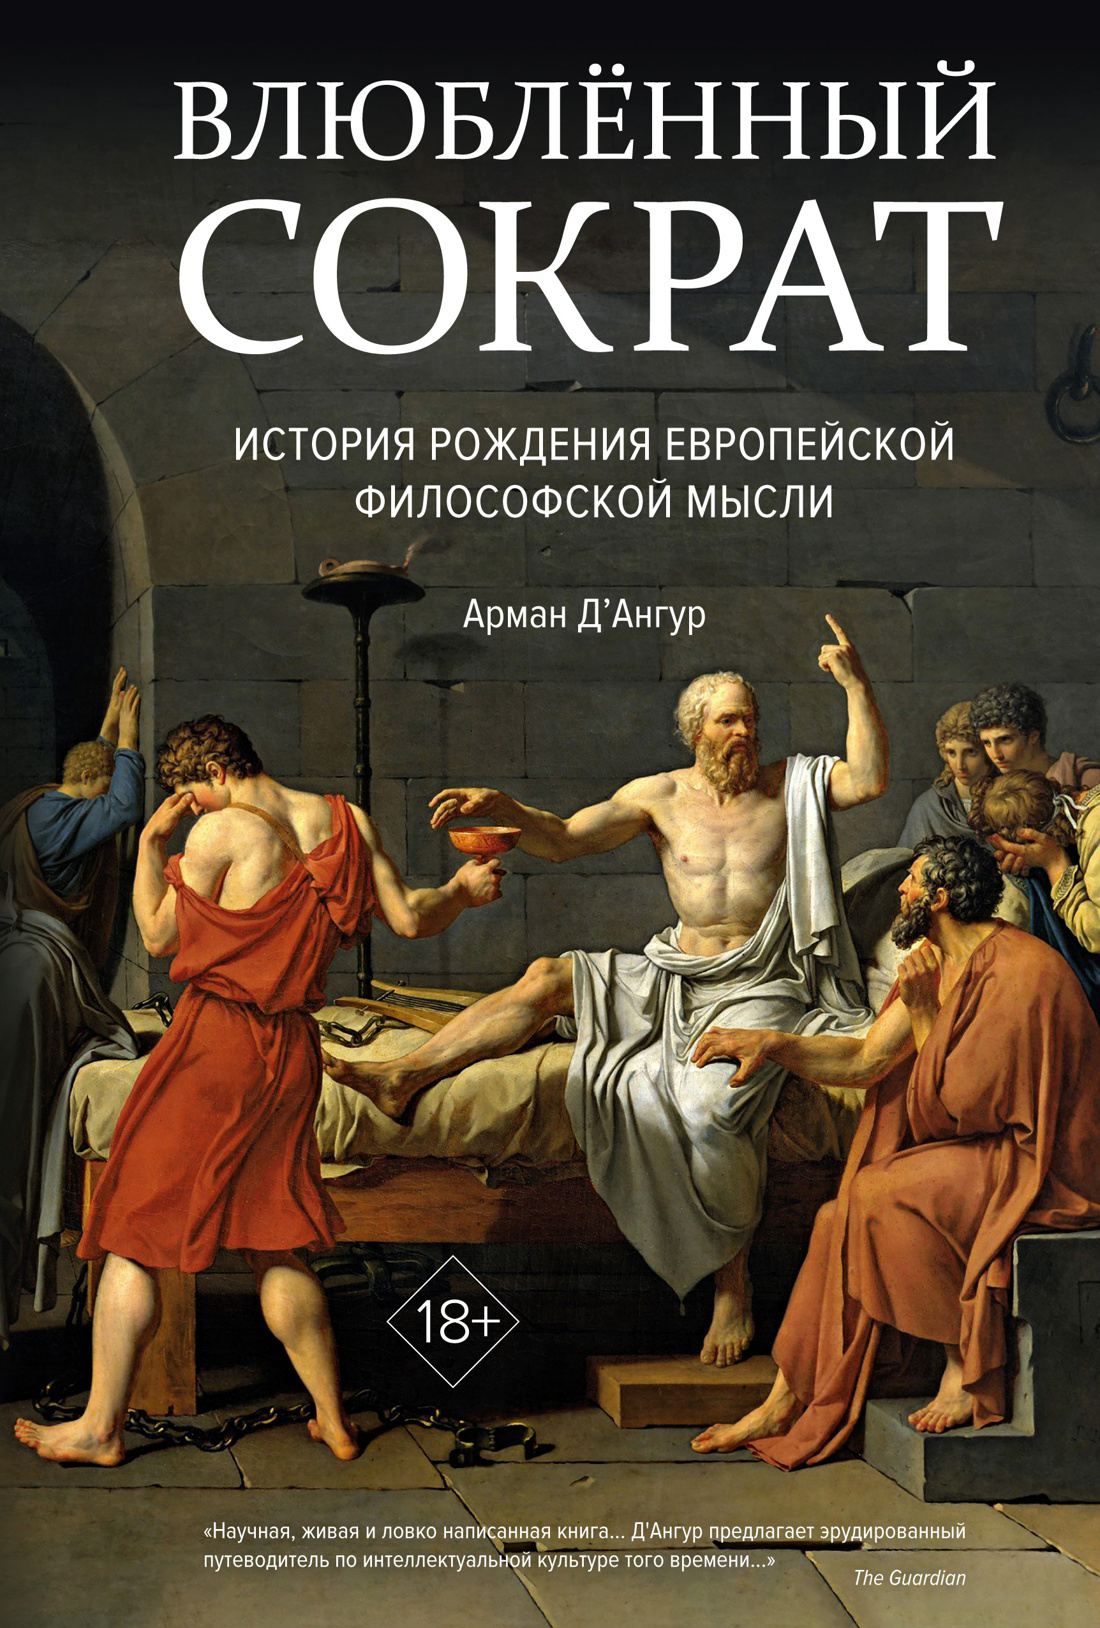 Влюбленный Сократ. История рождения европейской философской мысли томан й сократ